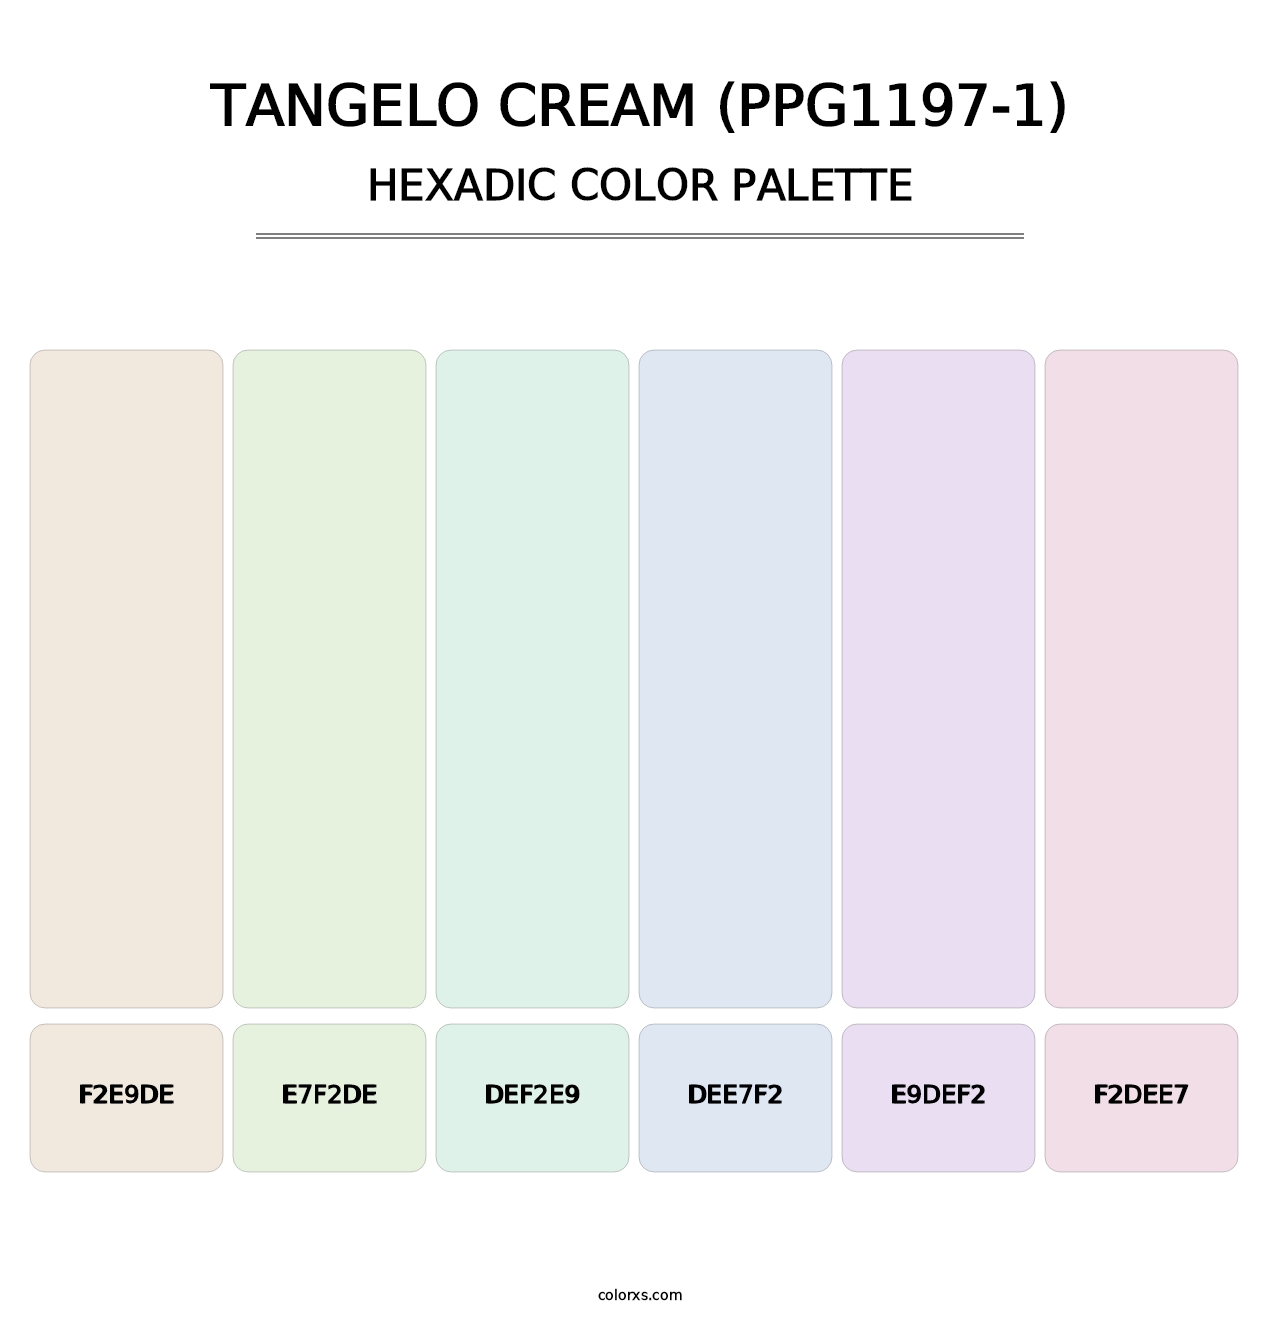 Tangelo Cream (PPG1197-1) - Hexadic Color Palette